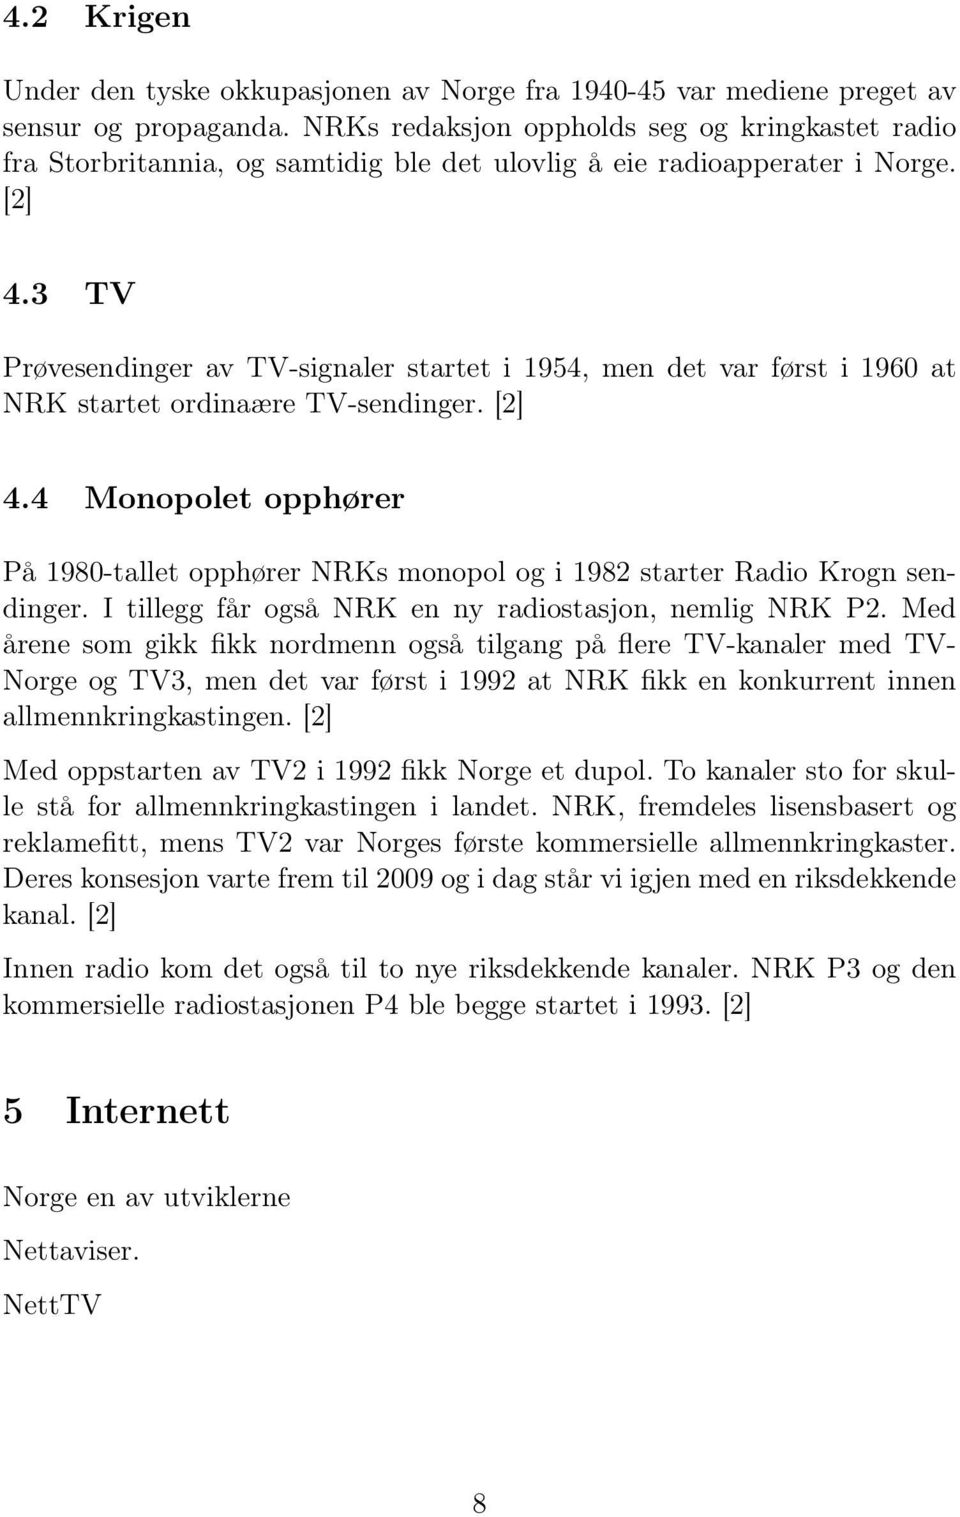 3 TV Prøvesendinger av TV-signaler startet i 1954, men det var først i 1960 at NRK startet ordinaære TV-sendinger. [2] 4.